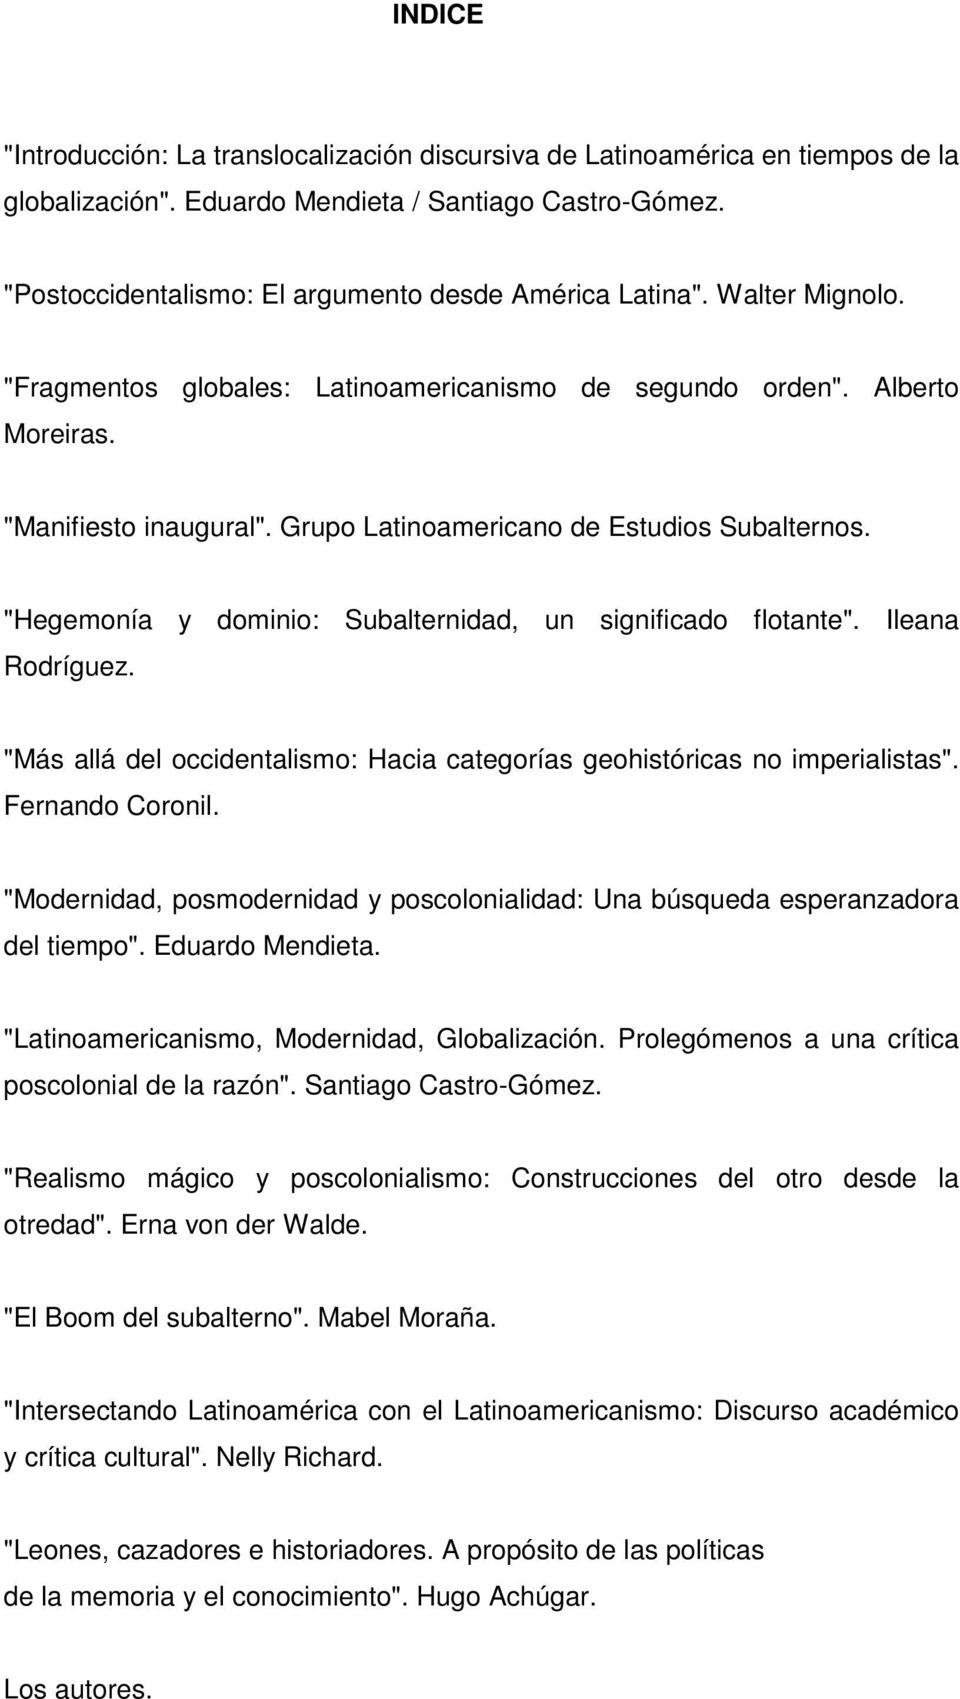 Grupo Latinoamericano de Estudios Subalternos. "Hegemonía y dominio: Subalternidad, un significado flotante". Ileana Rodríguez.